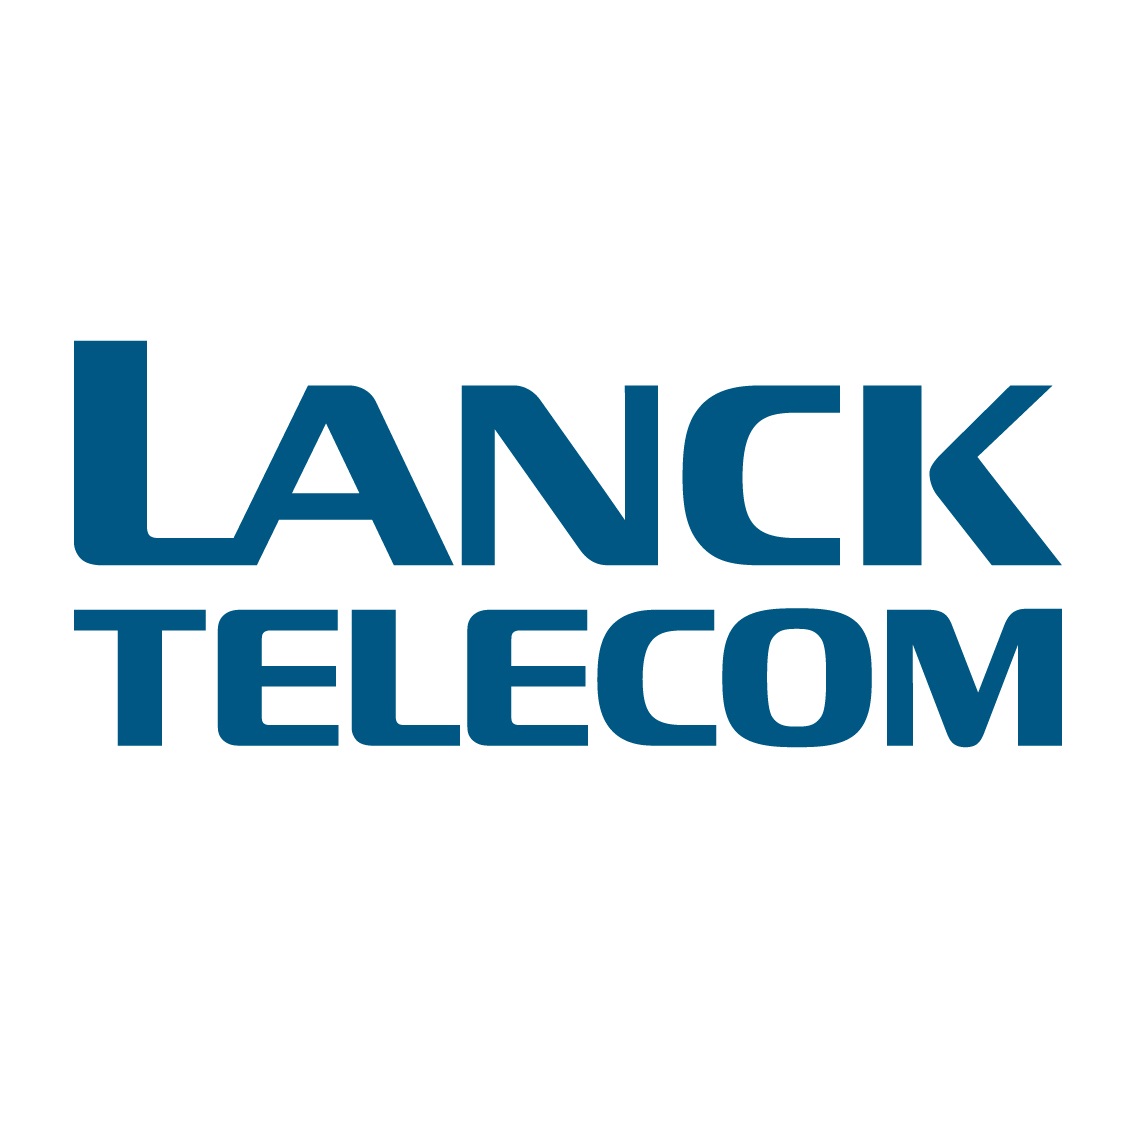 Lanck-Telecom@1140